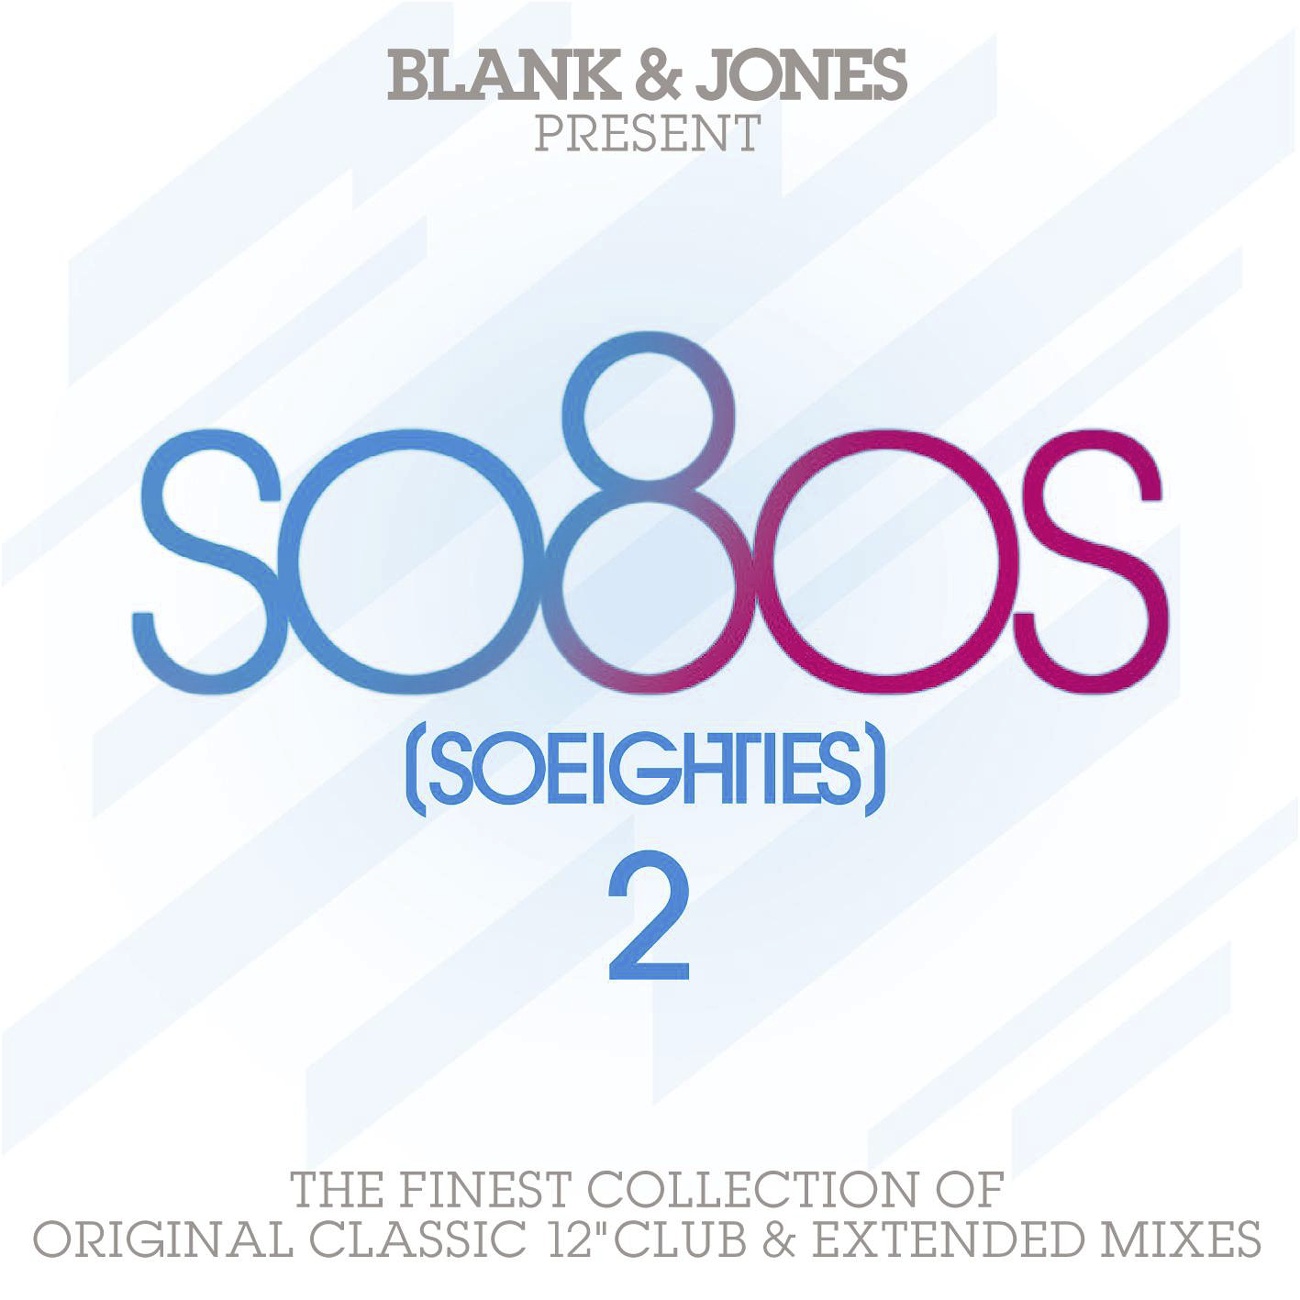 so80s (So Eighties) Volume 2 - Pres. By Blank & Jones